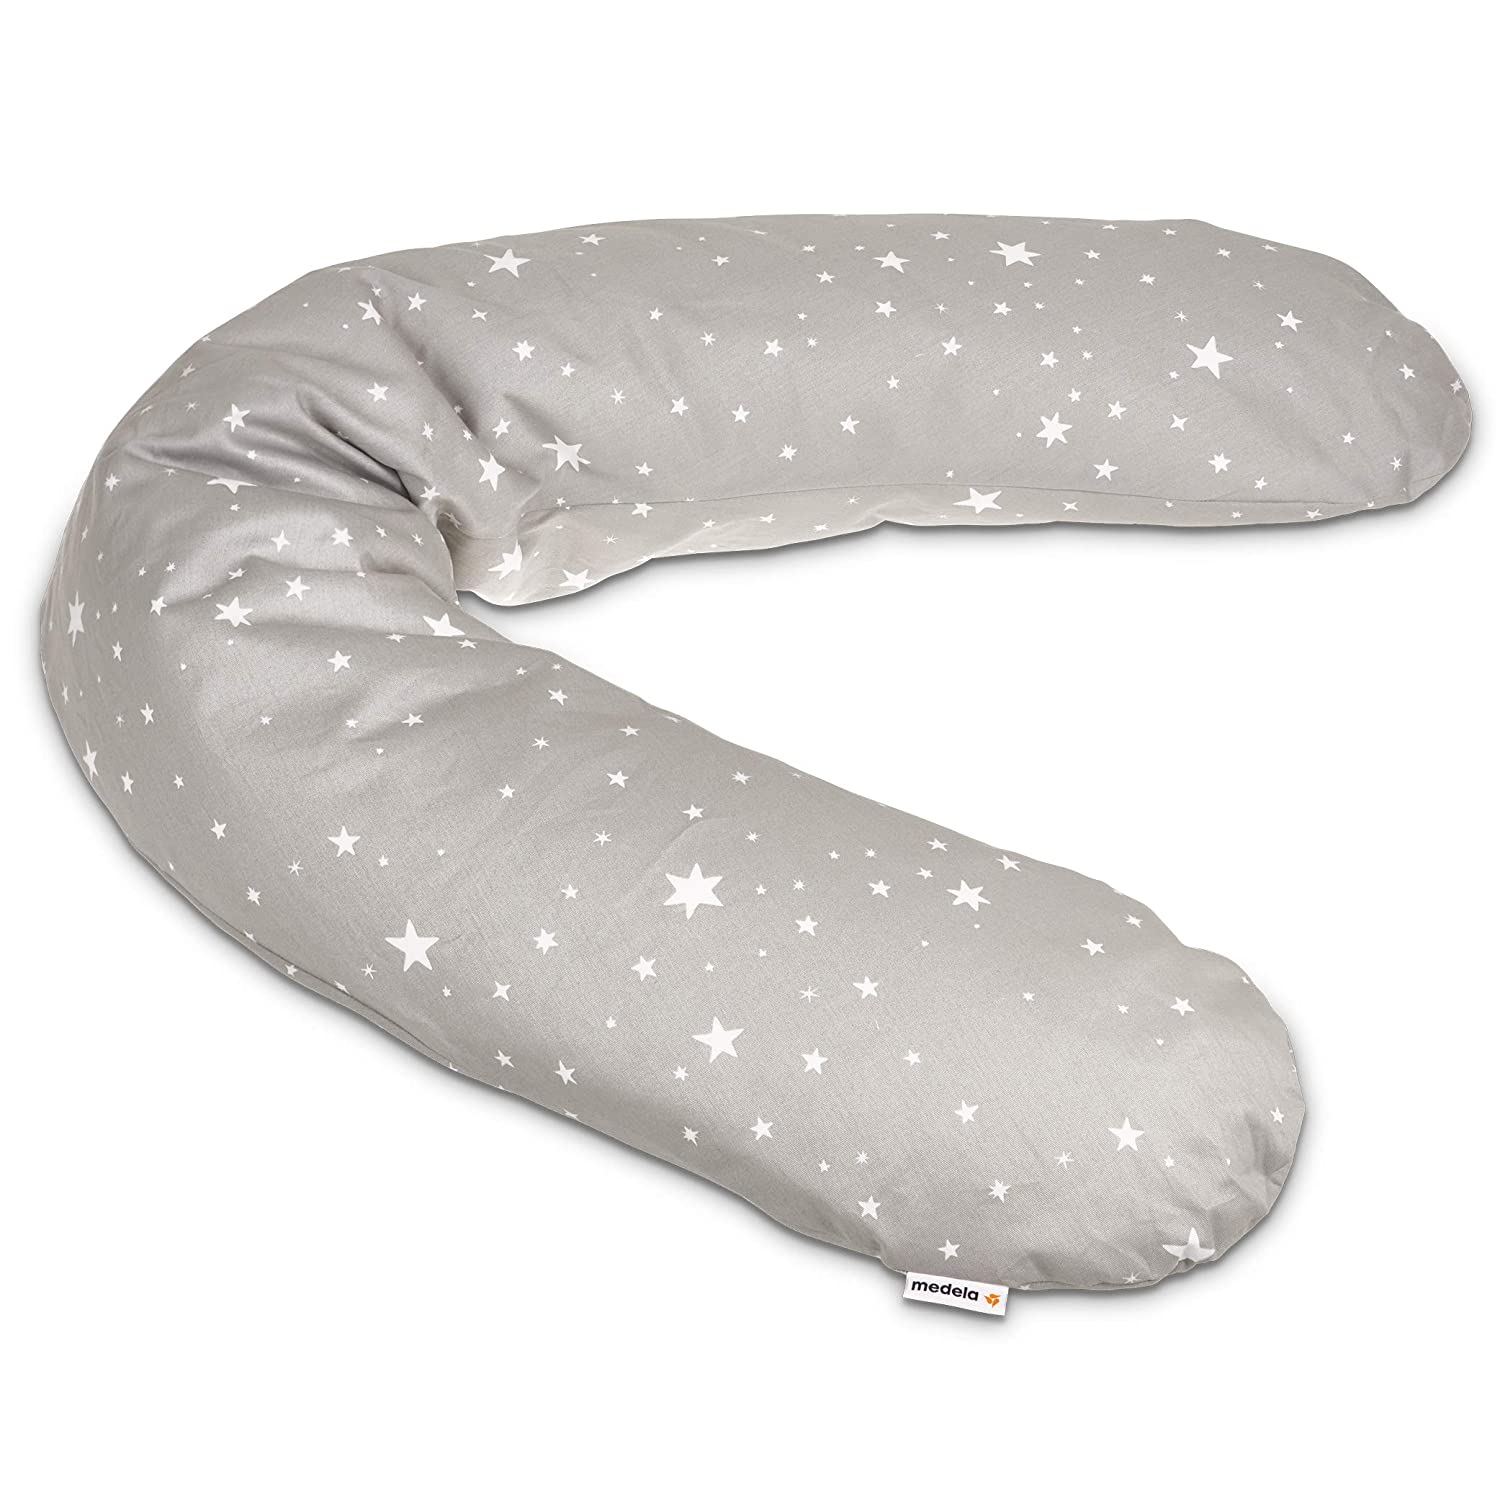 Medela Nursing Pillow Cover for Nursing Pillow 170 Cm, Cotton